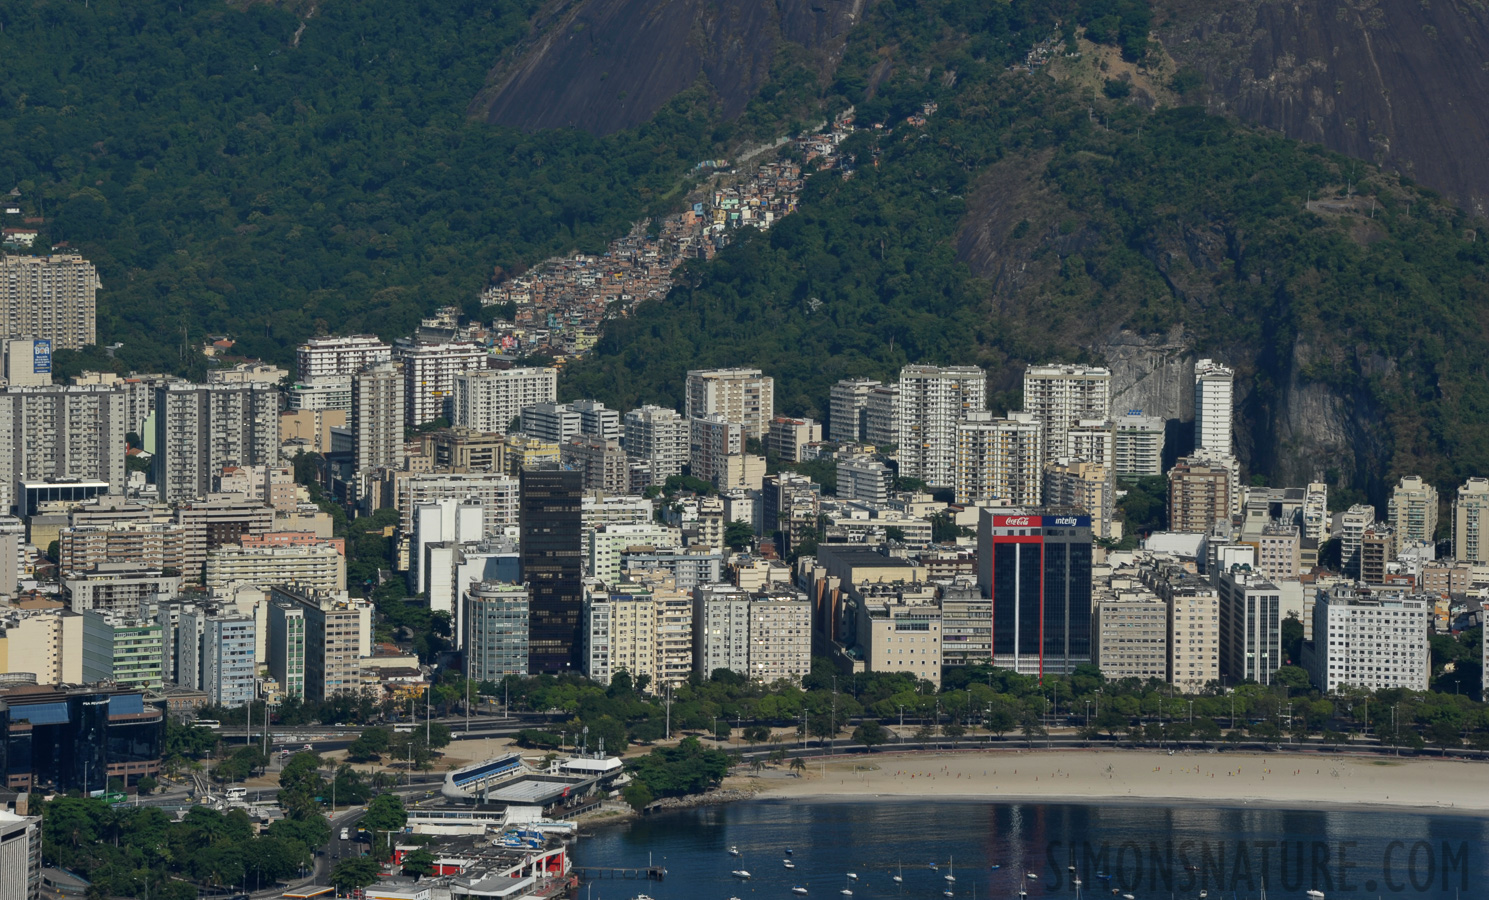 Rio de Janeiro [170 mm, 1/250 sec at f / 13, ISO 200]